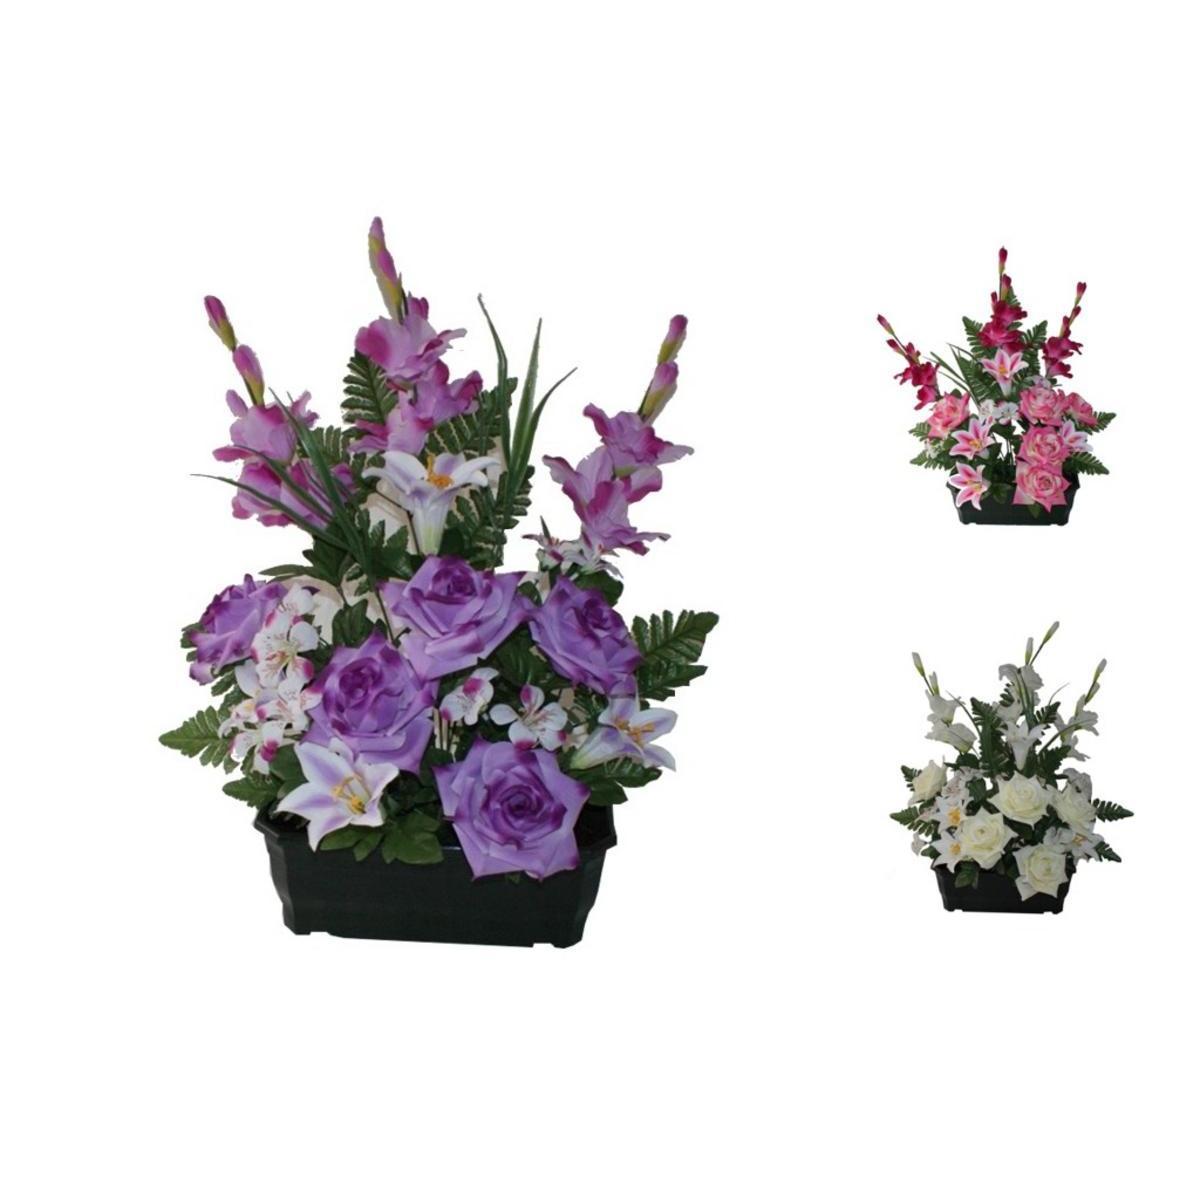 Jardinière de roses, lys et freesias - Polyester, PVC et béton - H 60 cm - Différents coloris